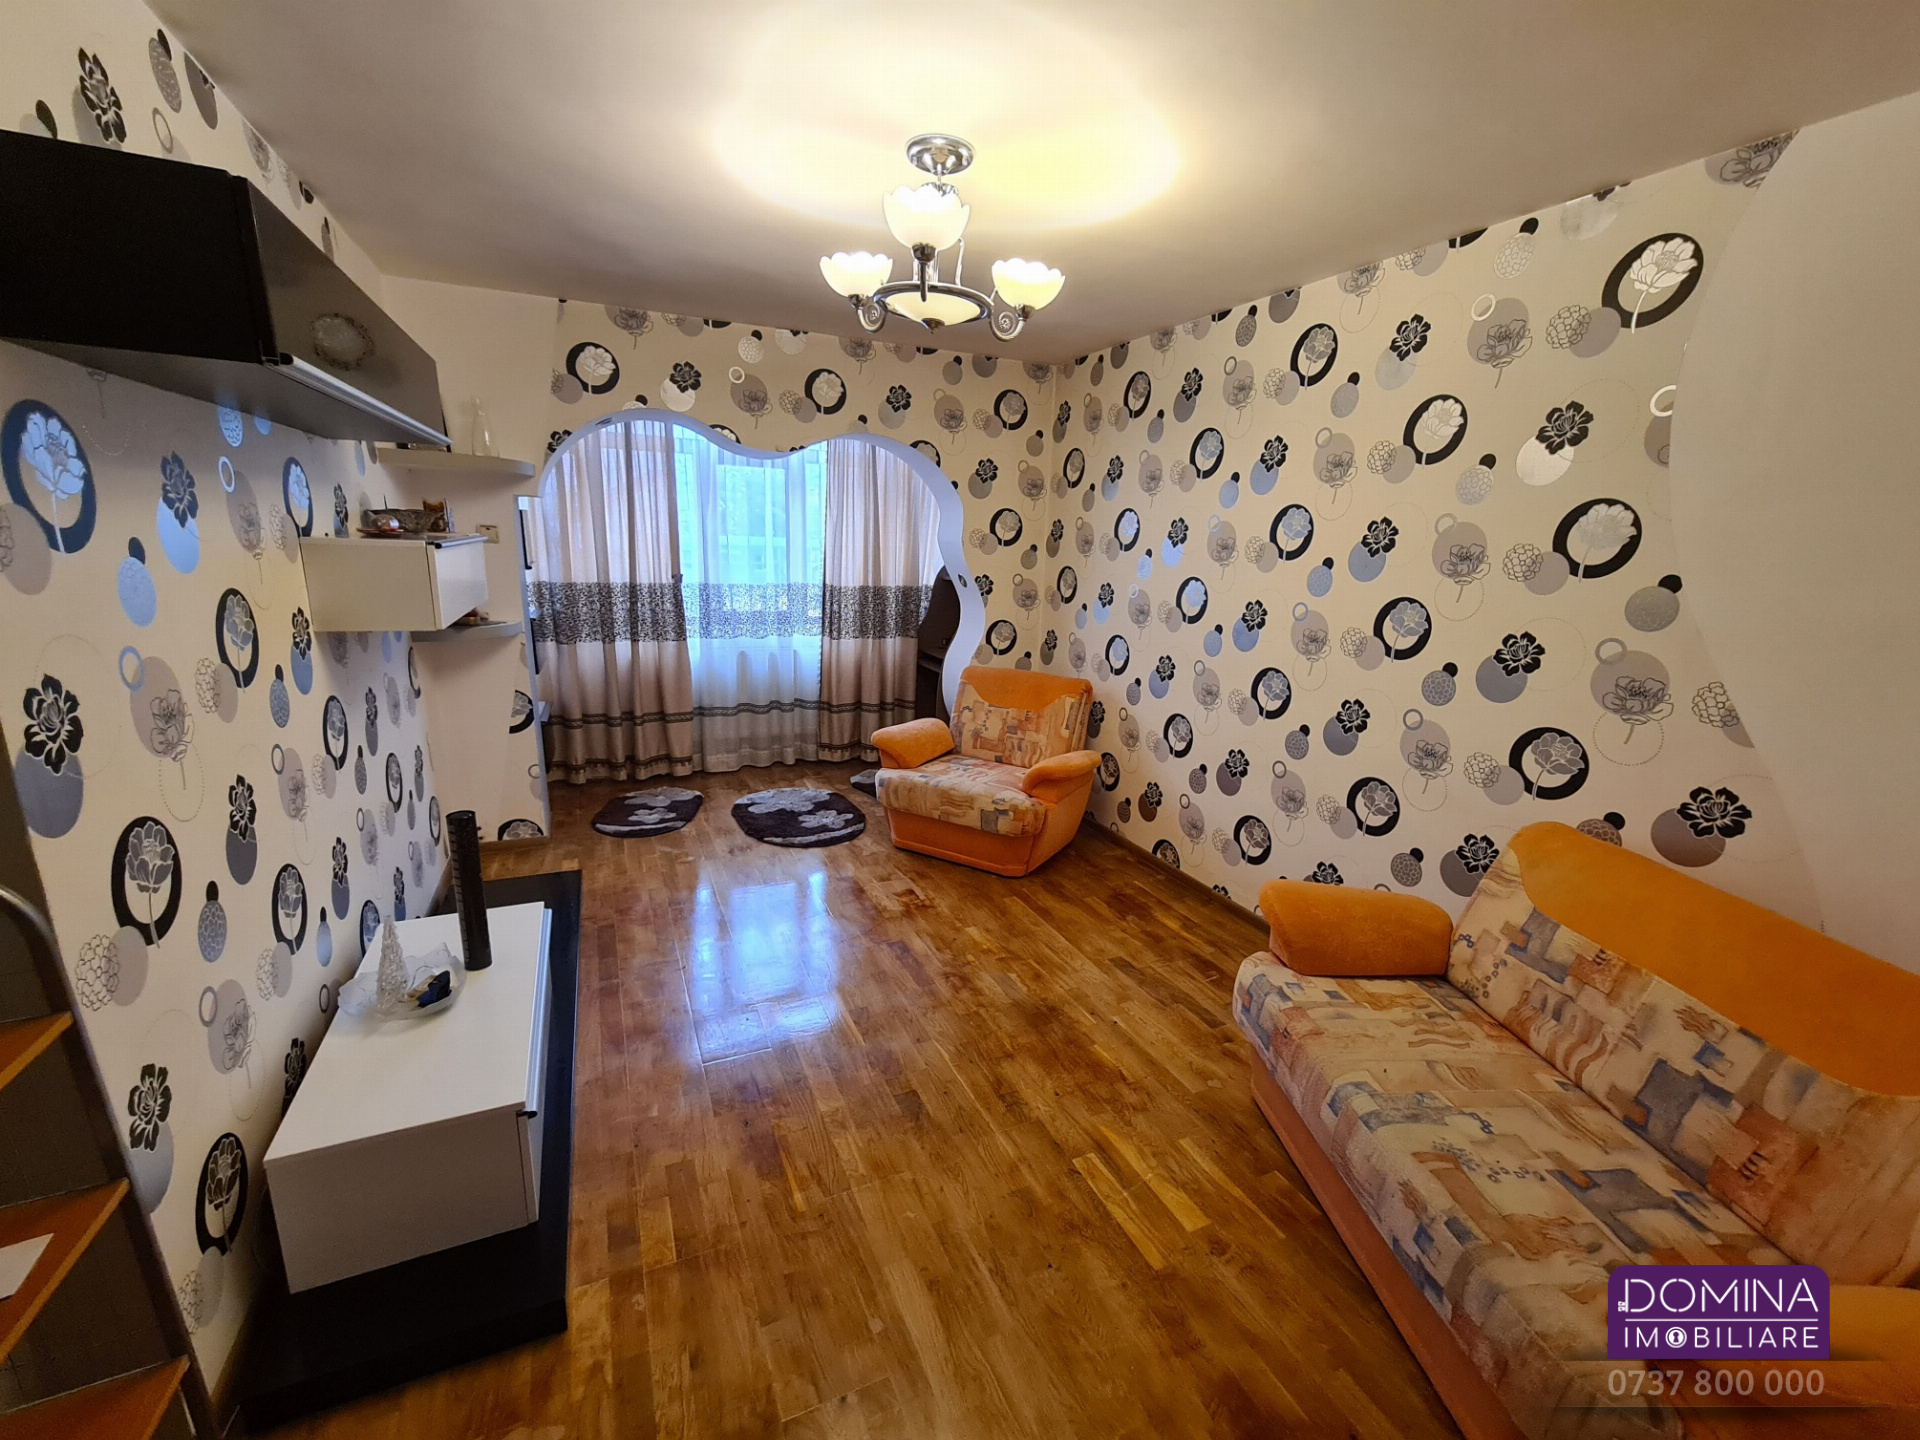 Închiriere apartament 2 camere situat în Târgu Jiu, strada Nicolae Titulescu